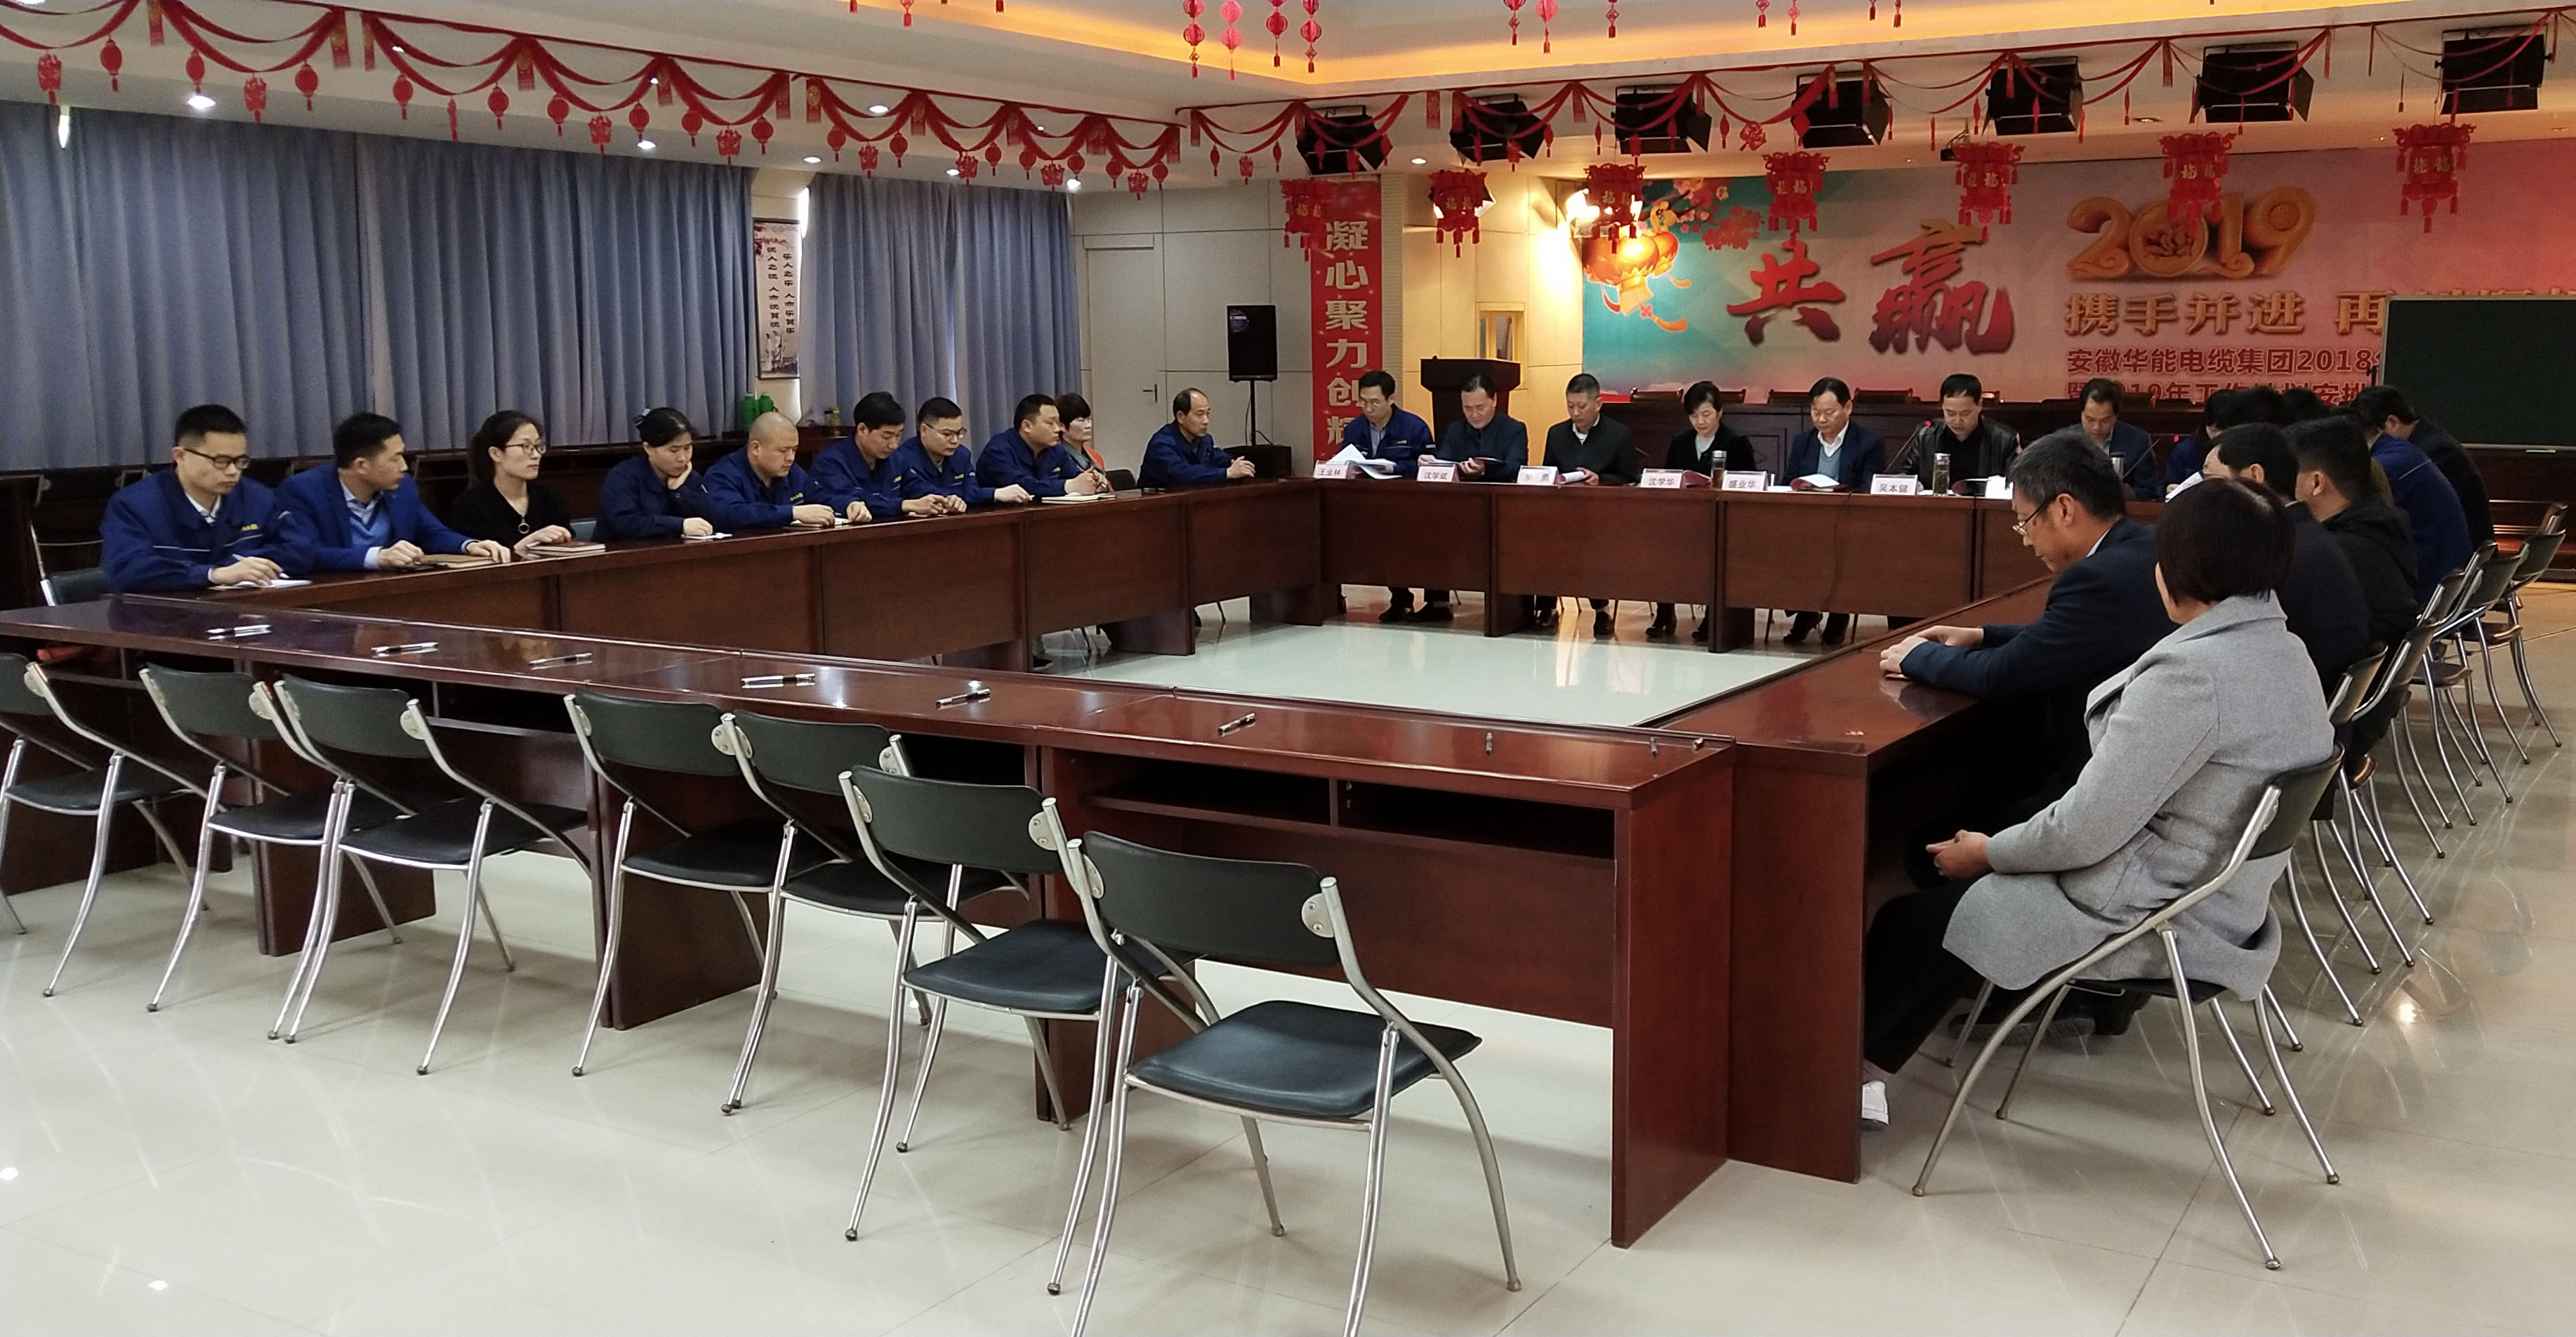 上海安徽华能集团党委各支部顺利完成换届选举工作